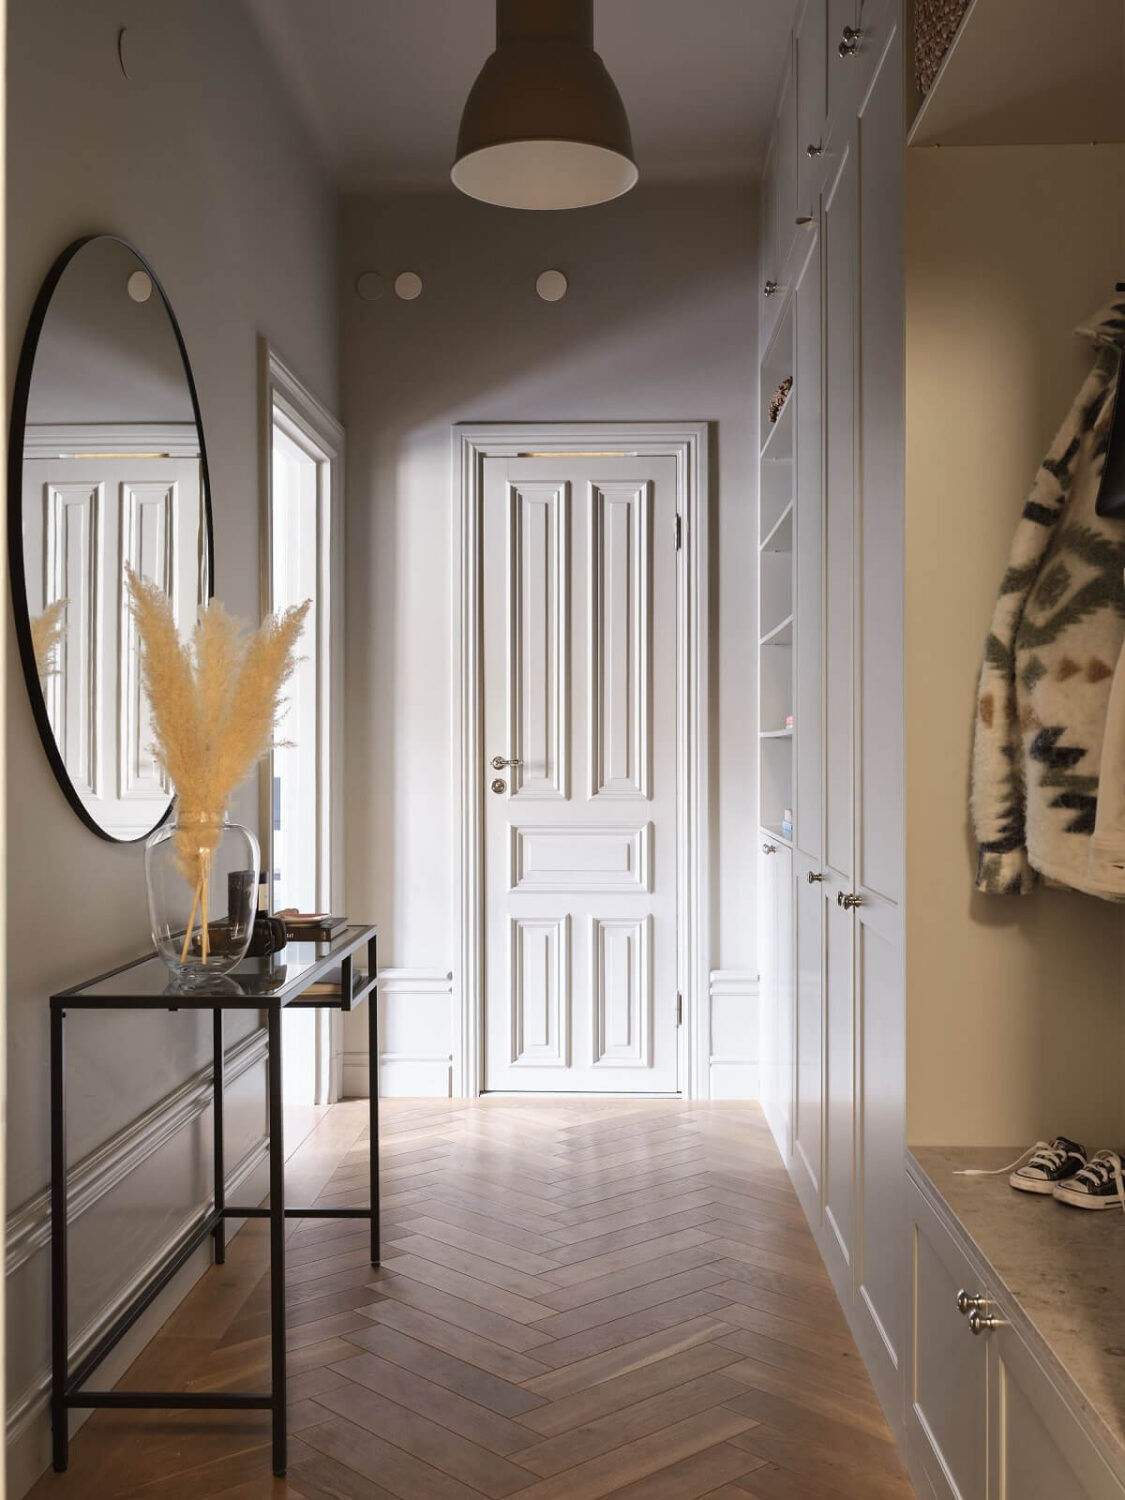 hallway-built-in-cabinets-niche-coat-storage-round-mirror-nordroom